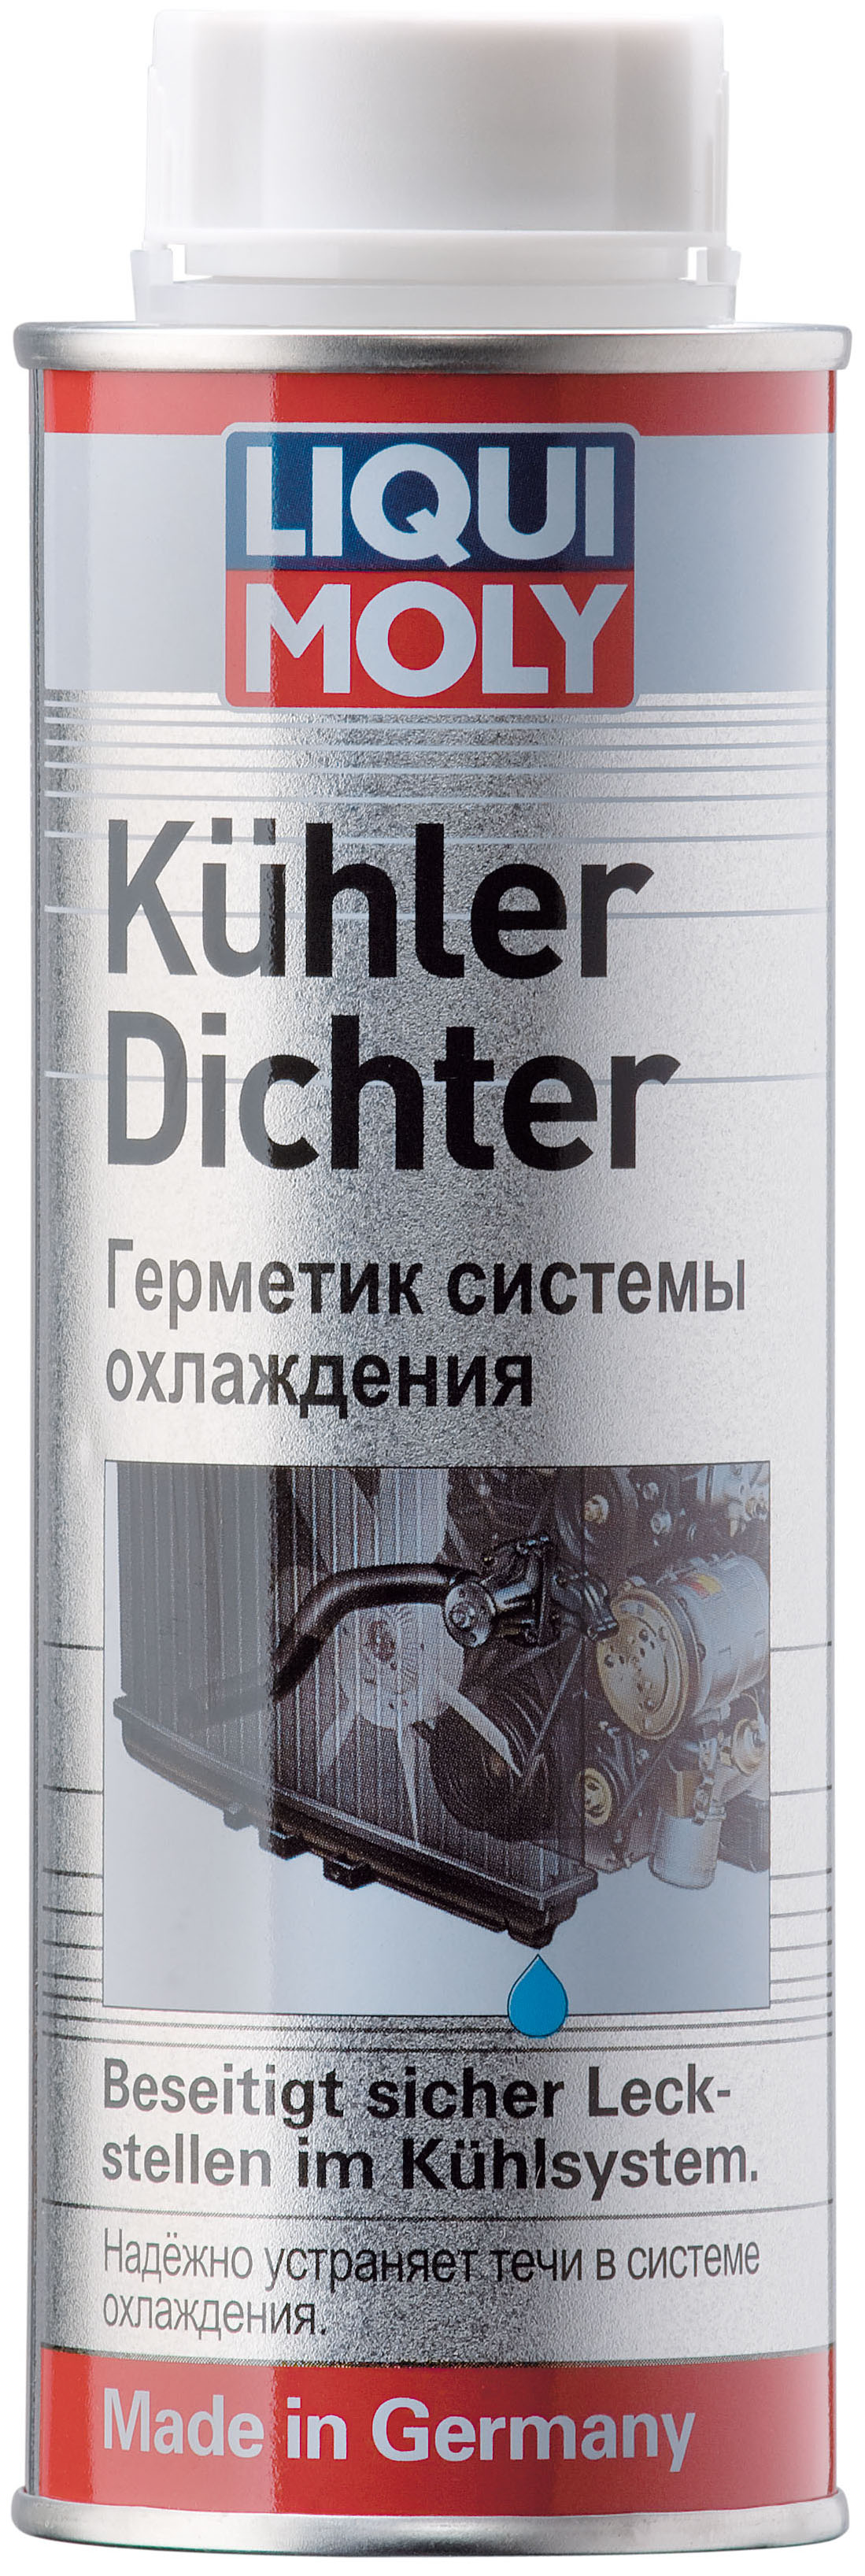 Комплект (6шт. 1997 Присадка в систему охлаждения для герметизации радиатора Kuhler Dichter 250мл) 19976